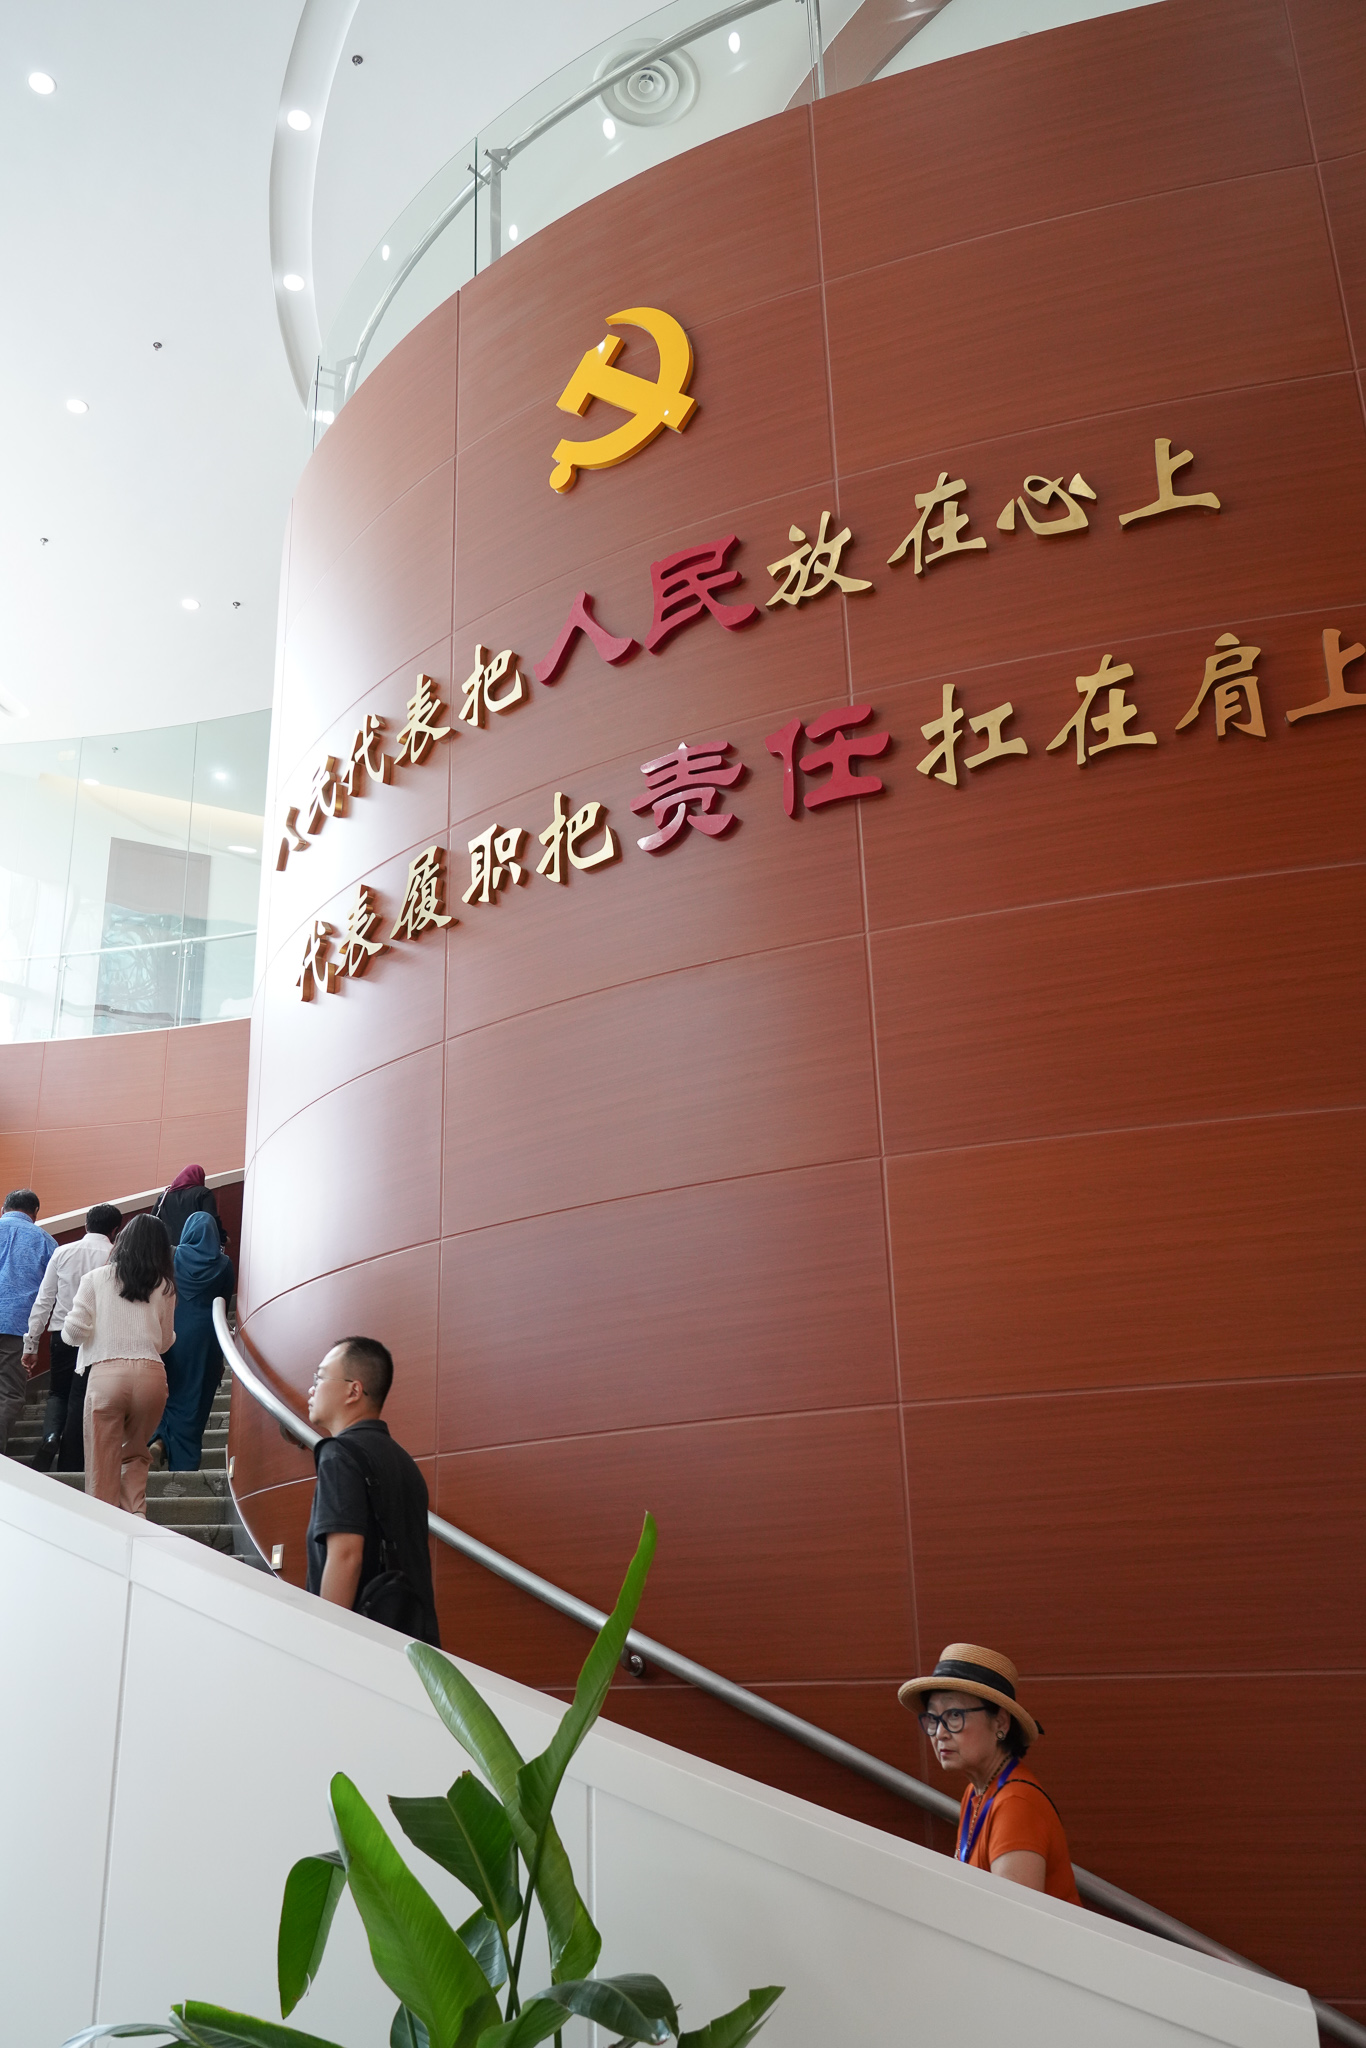 Parliamentarians visit Legislative Outreach Office in E China's Jiangsu